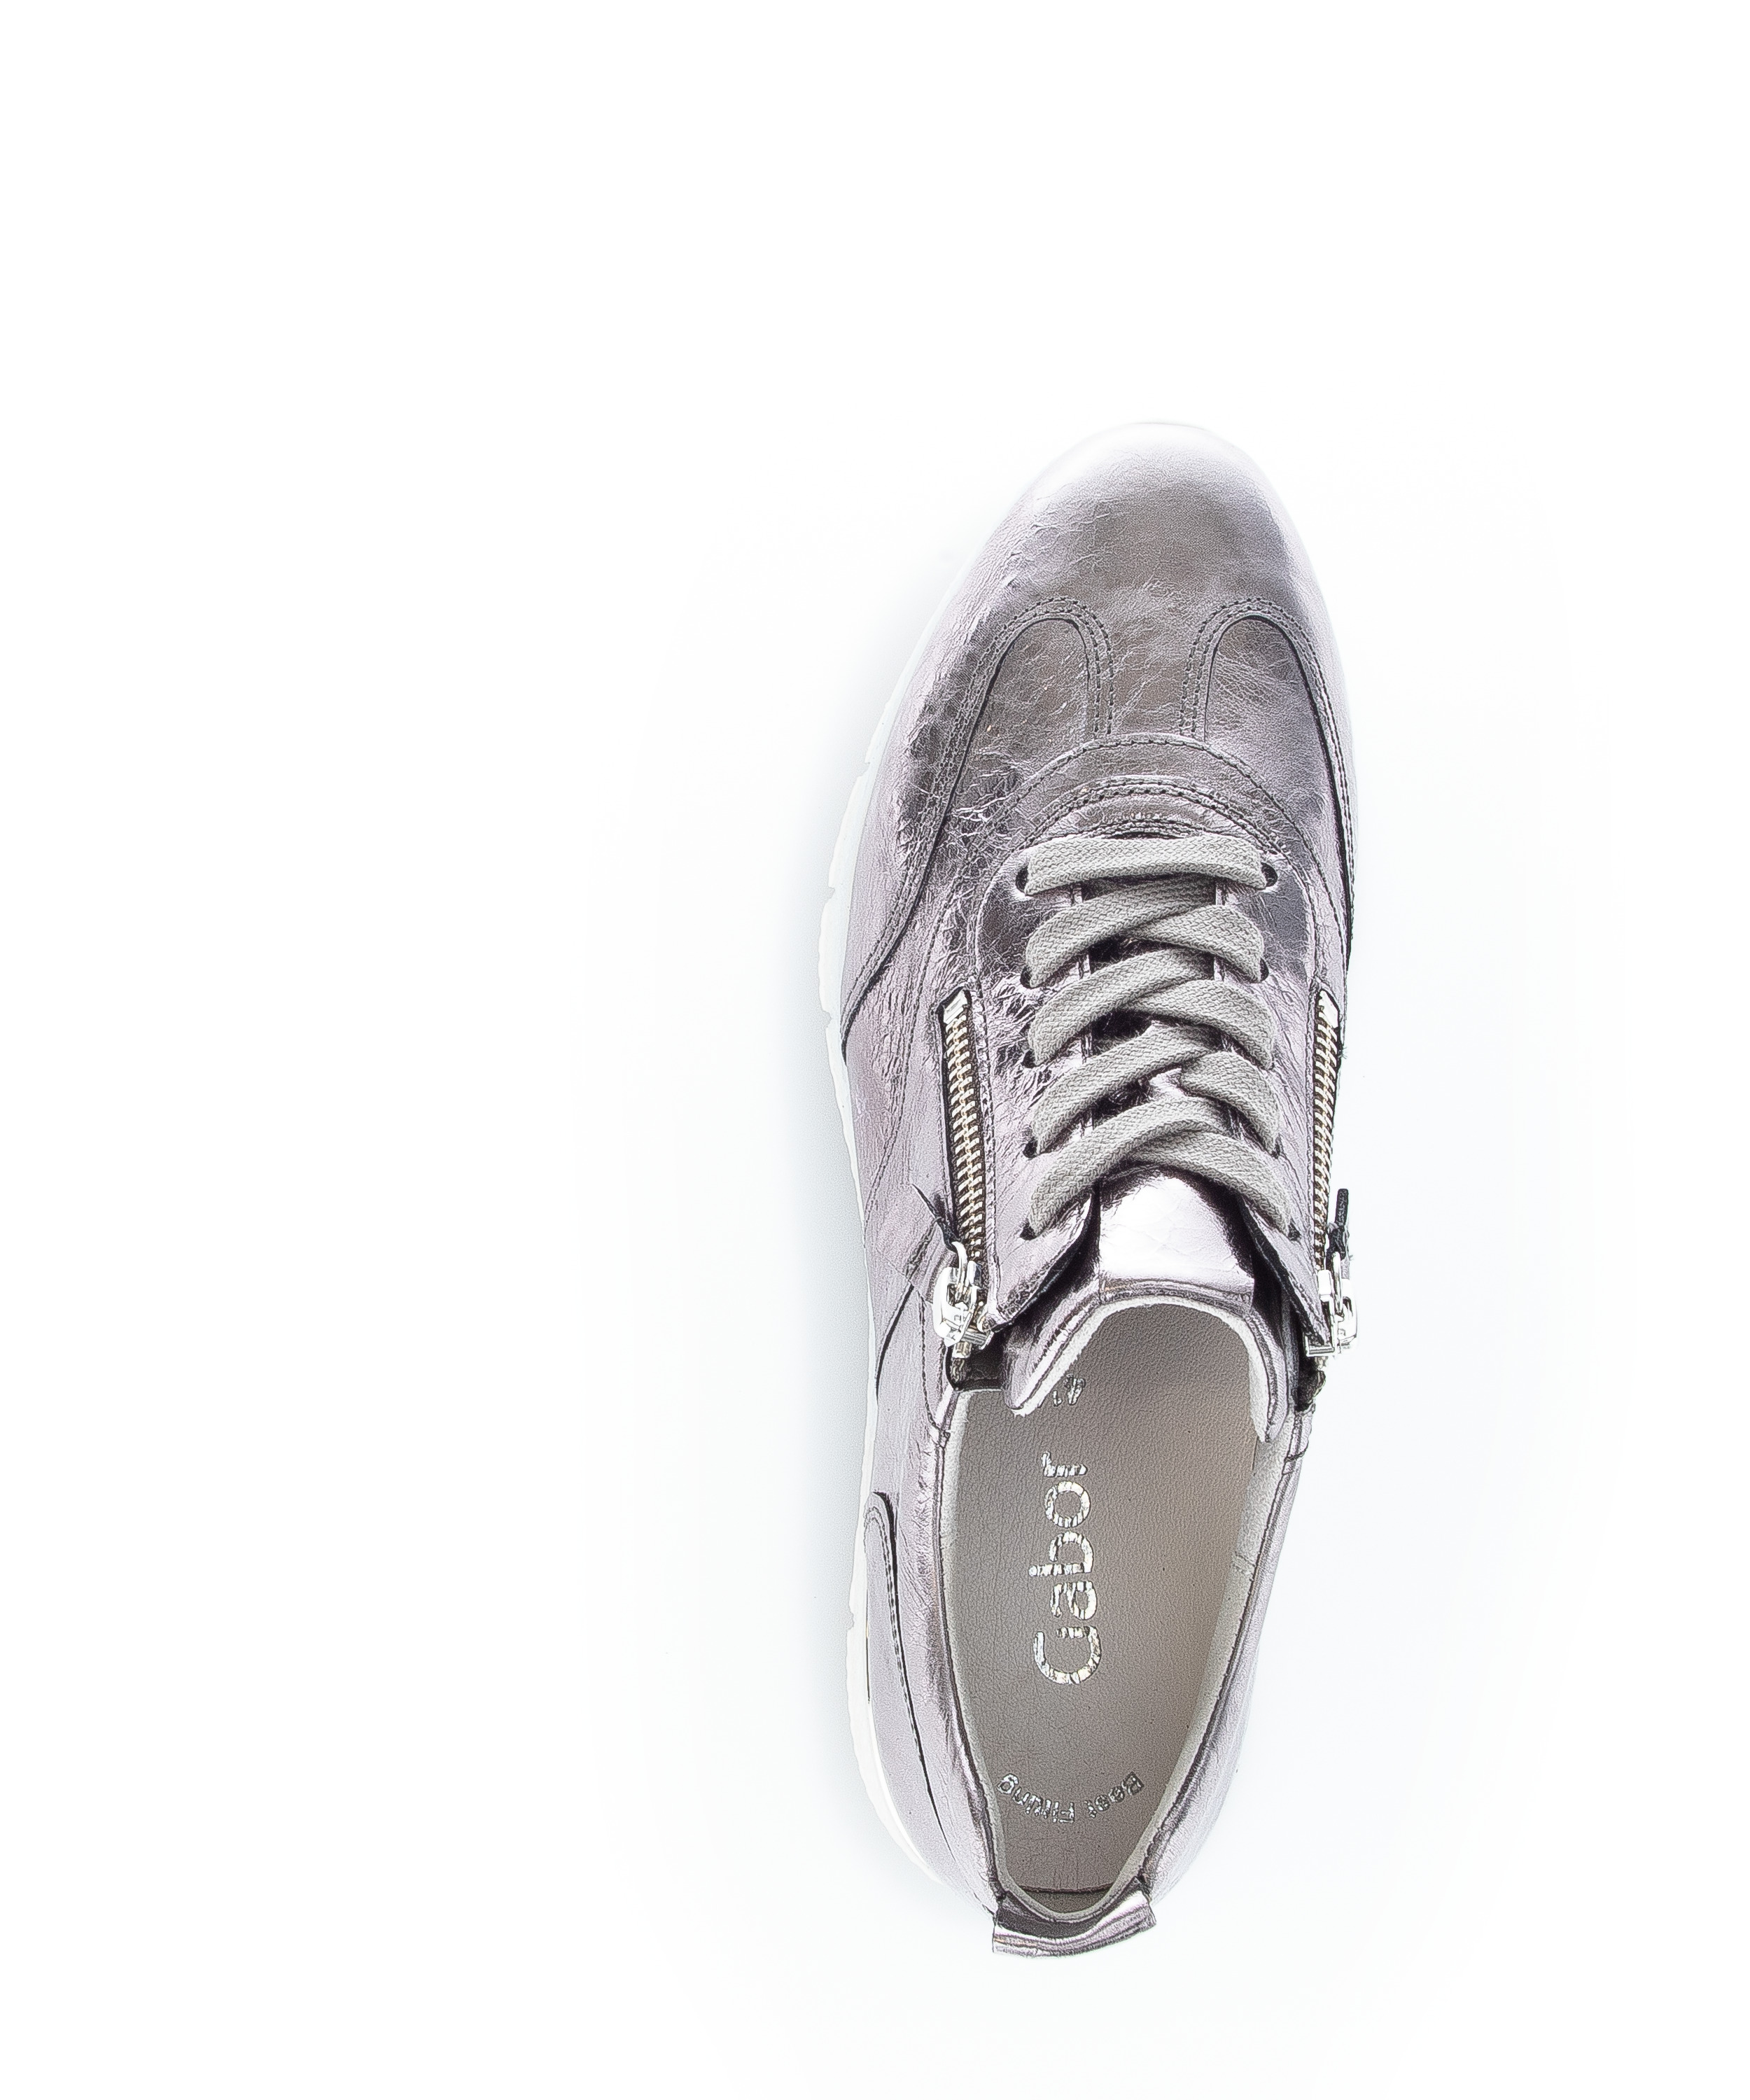 Gabor Shoes Sneaker Silber Glattleder